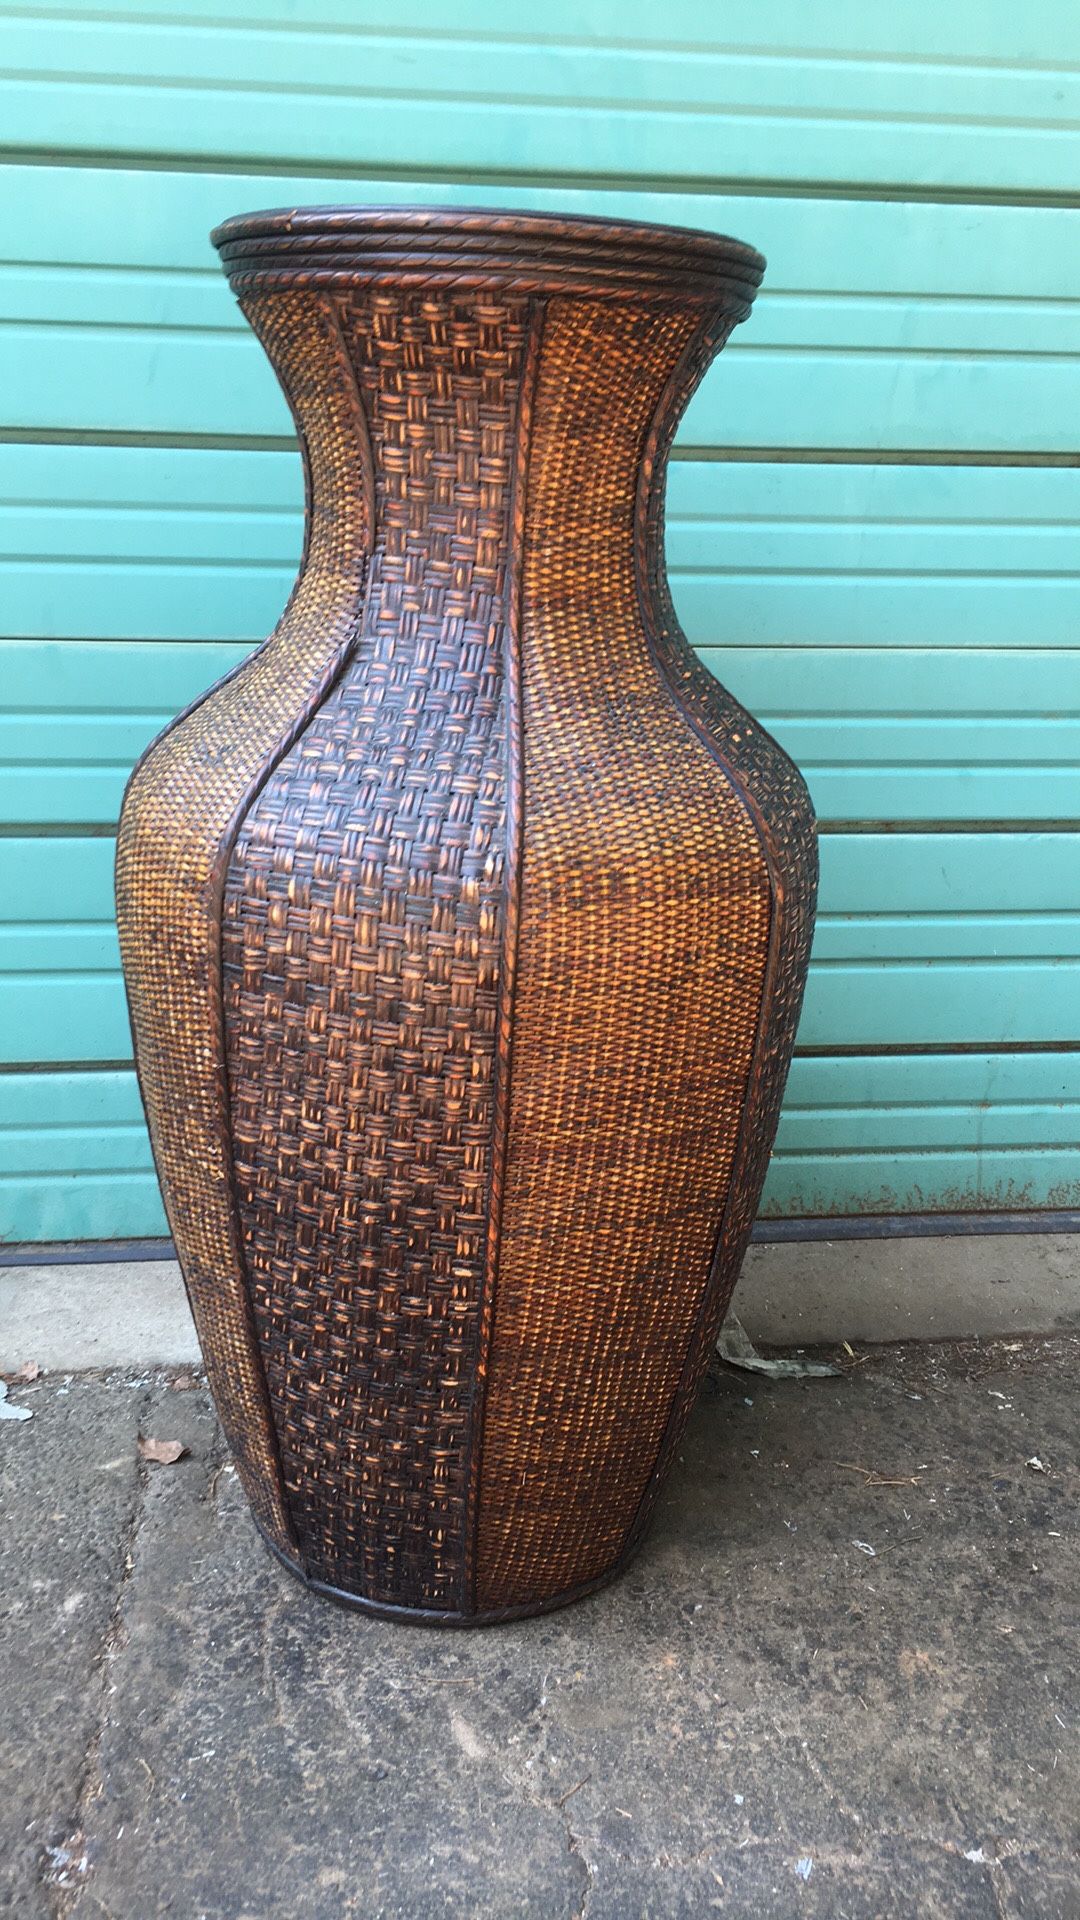 Big flower vase (3ft) brown